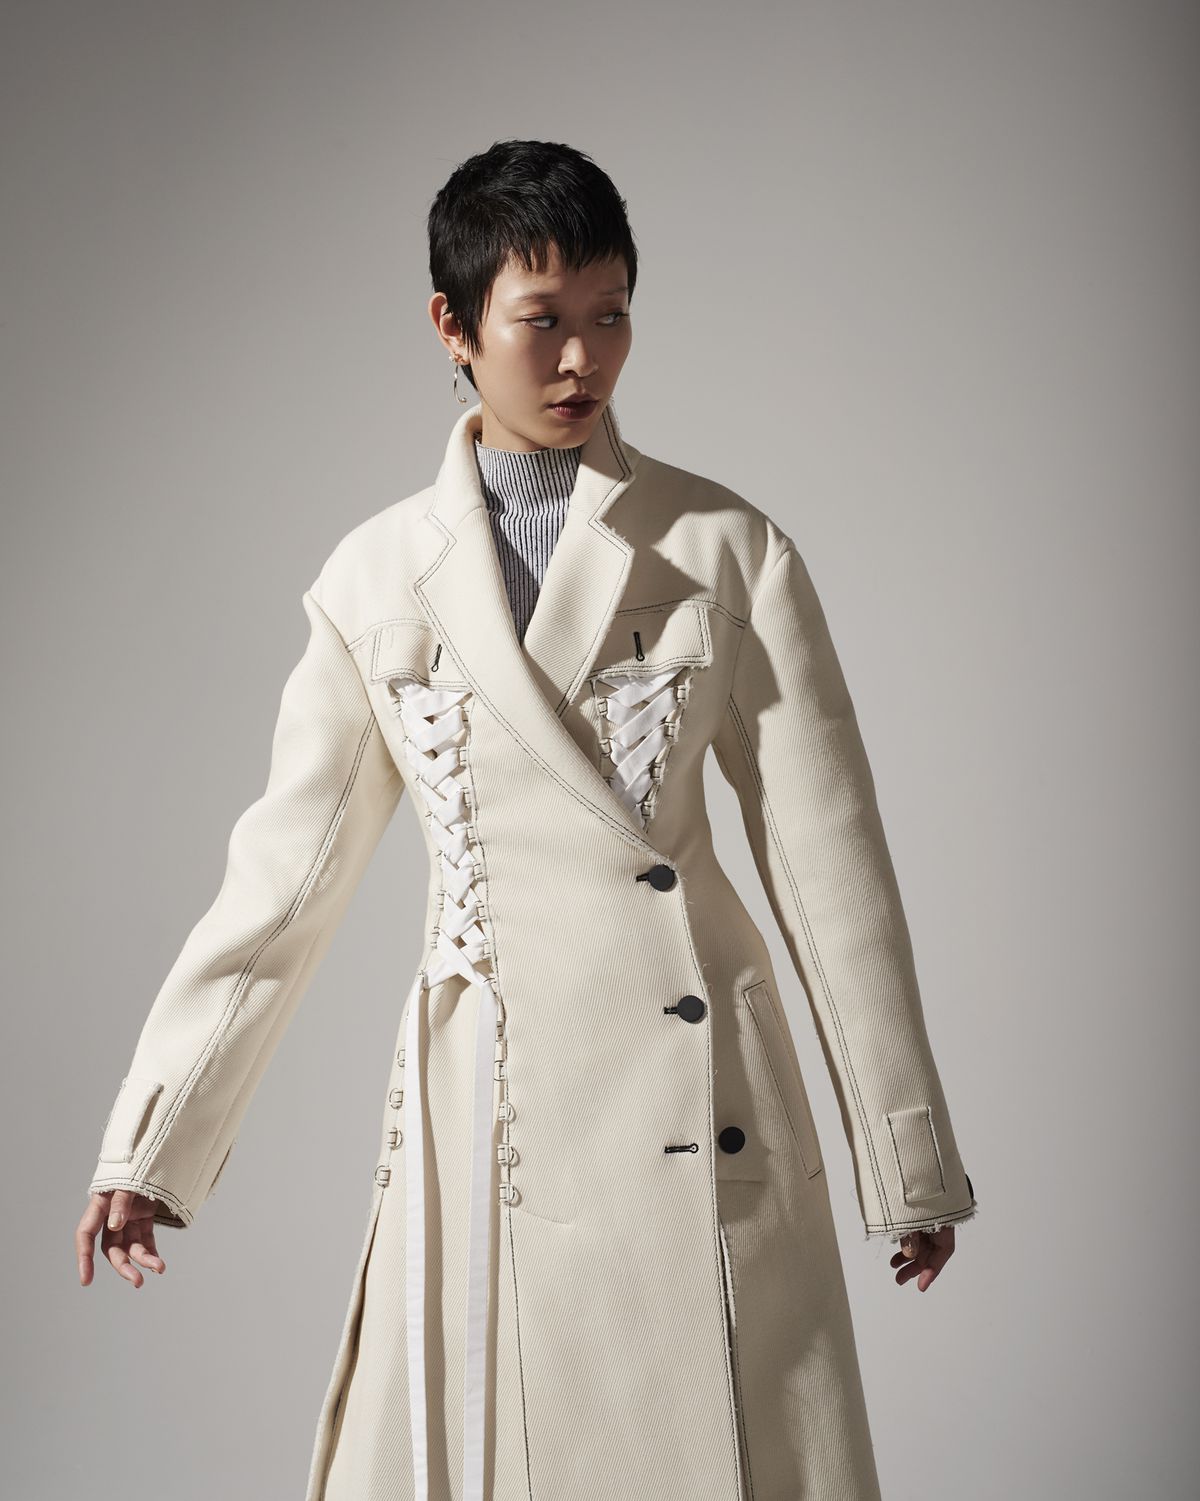 A model wearing a long white coat